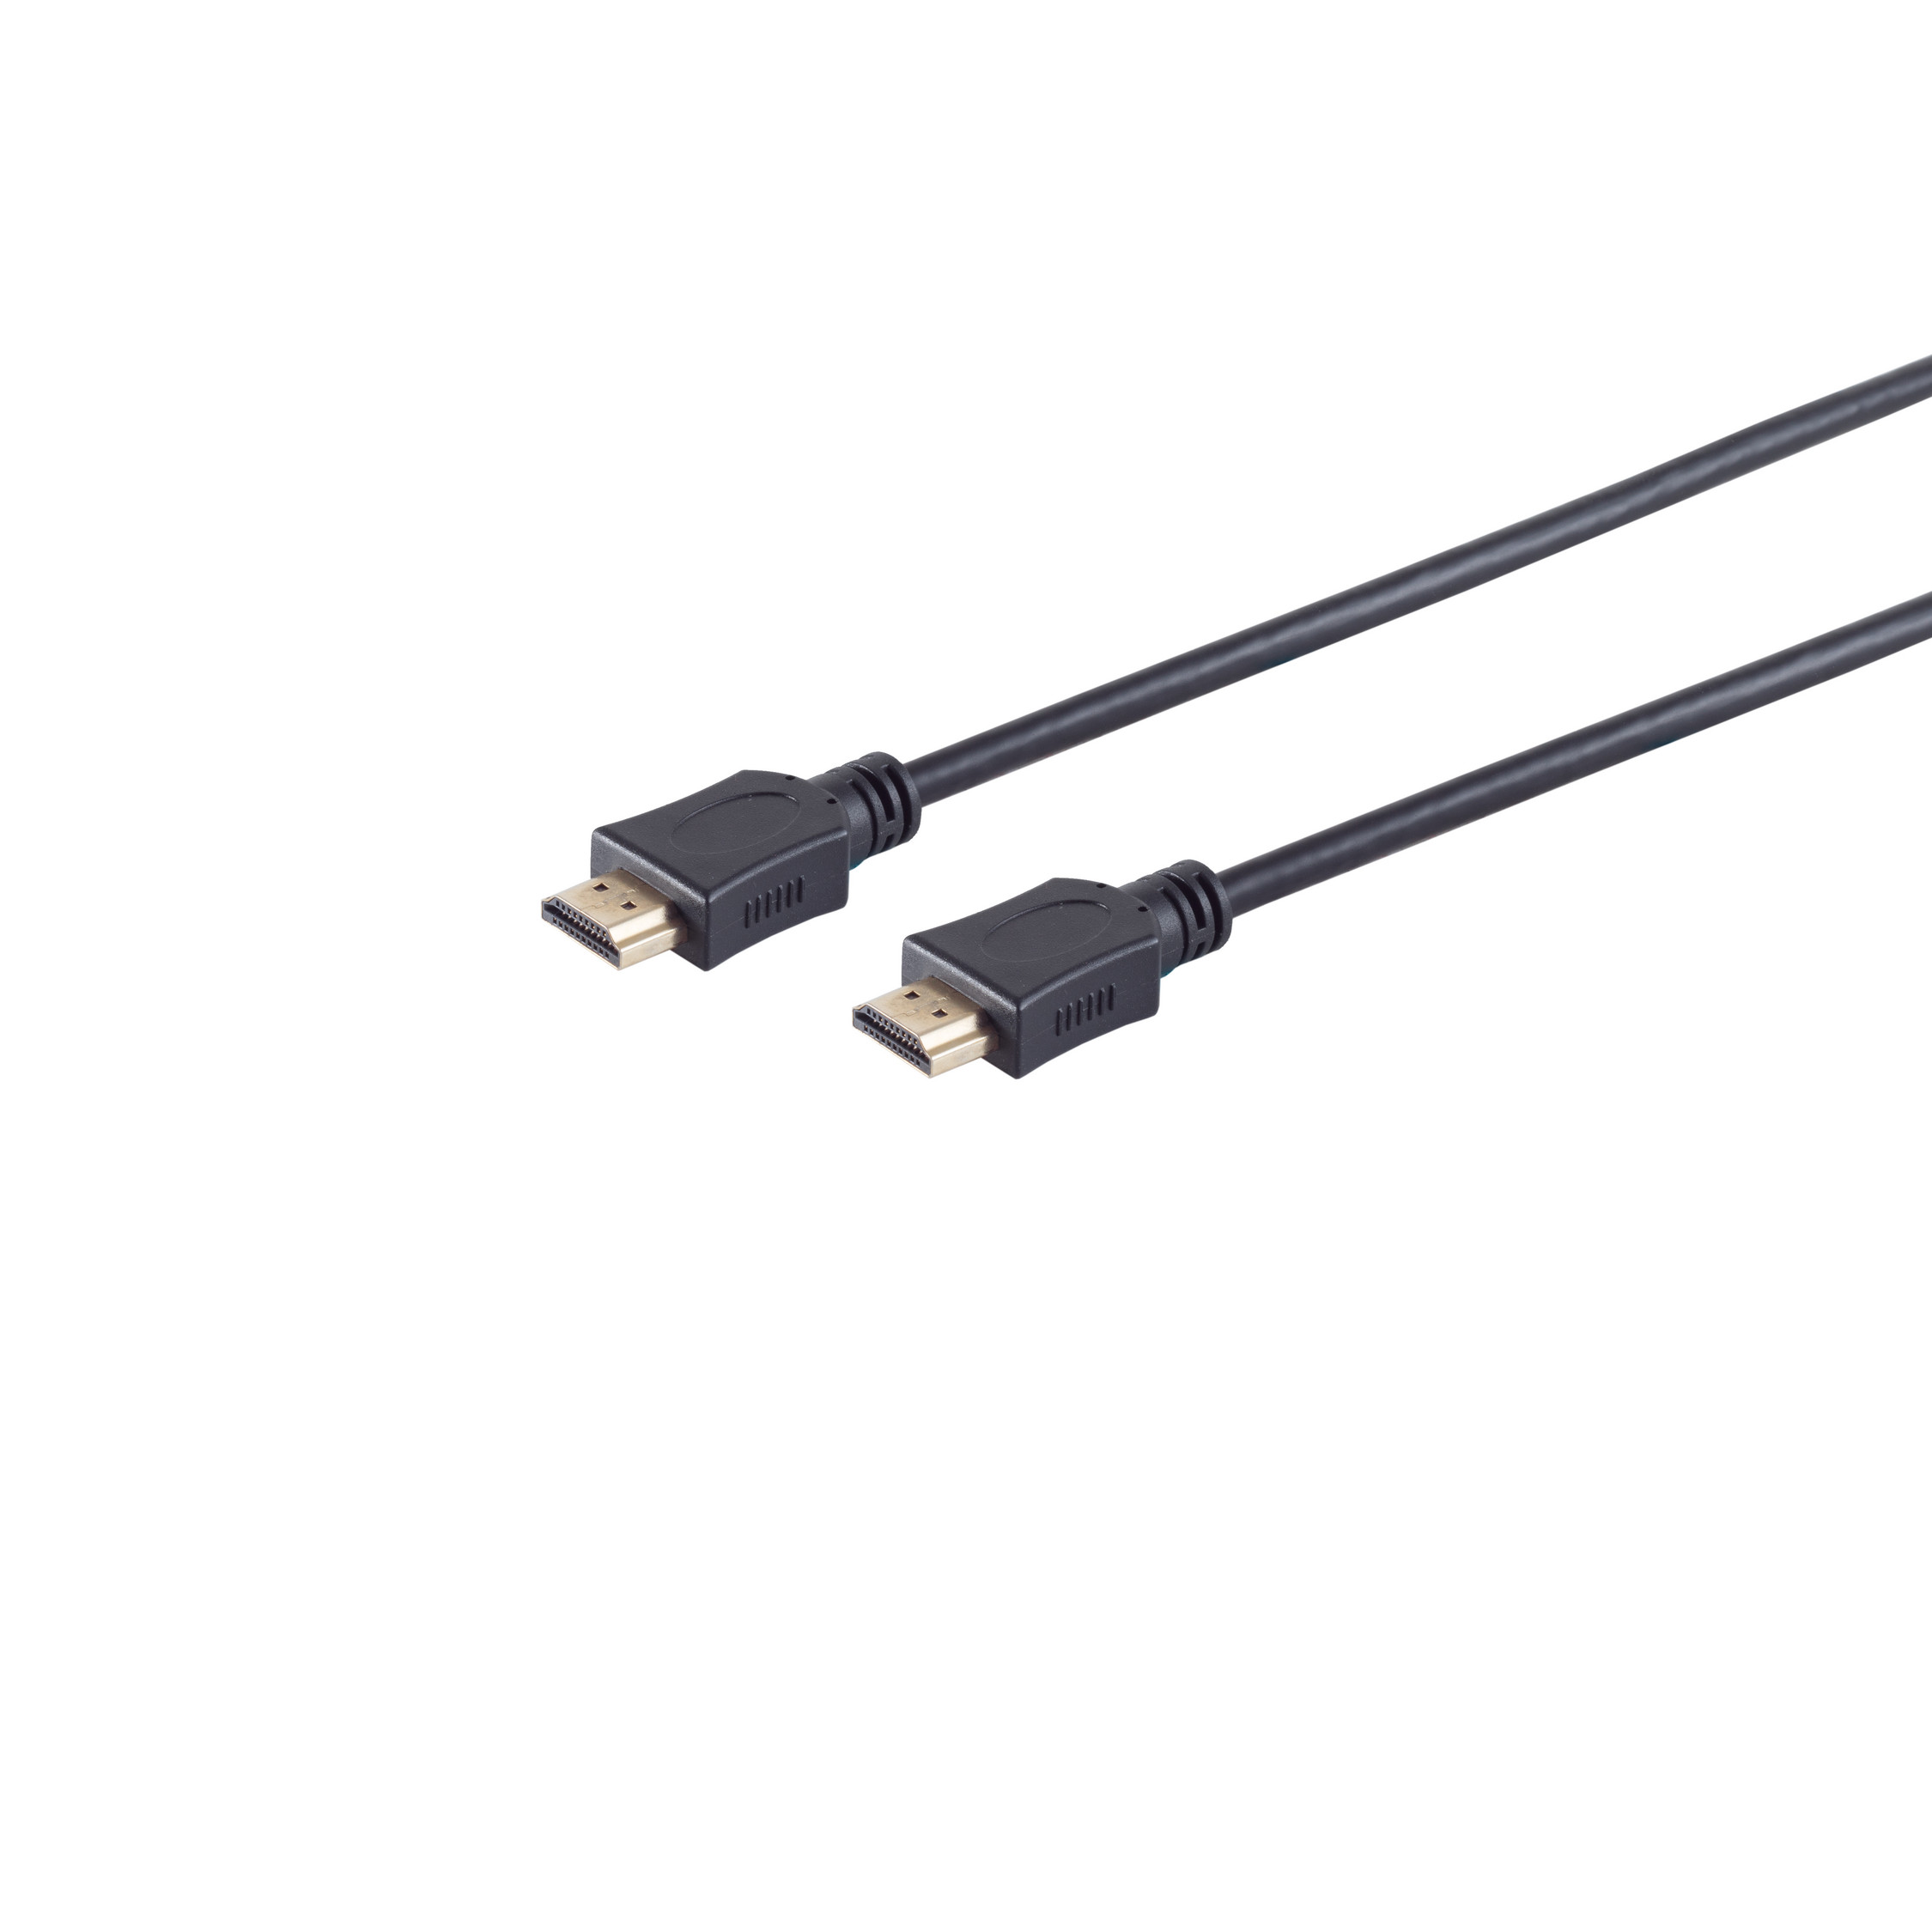 A-Stecker HDMI A-Stecker 15m HEAC / HDMI MAXIMUM S/CONN verg. Kabel CONNECTIVITY HDMI